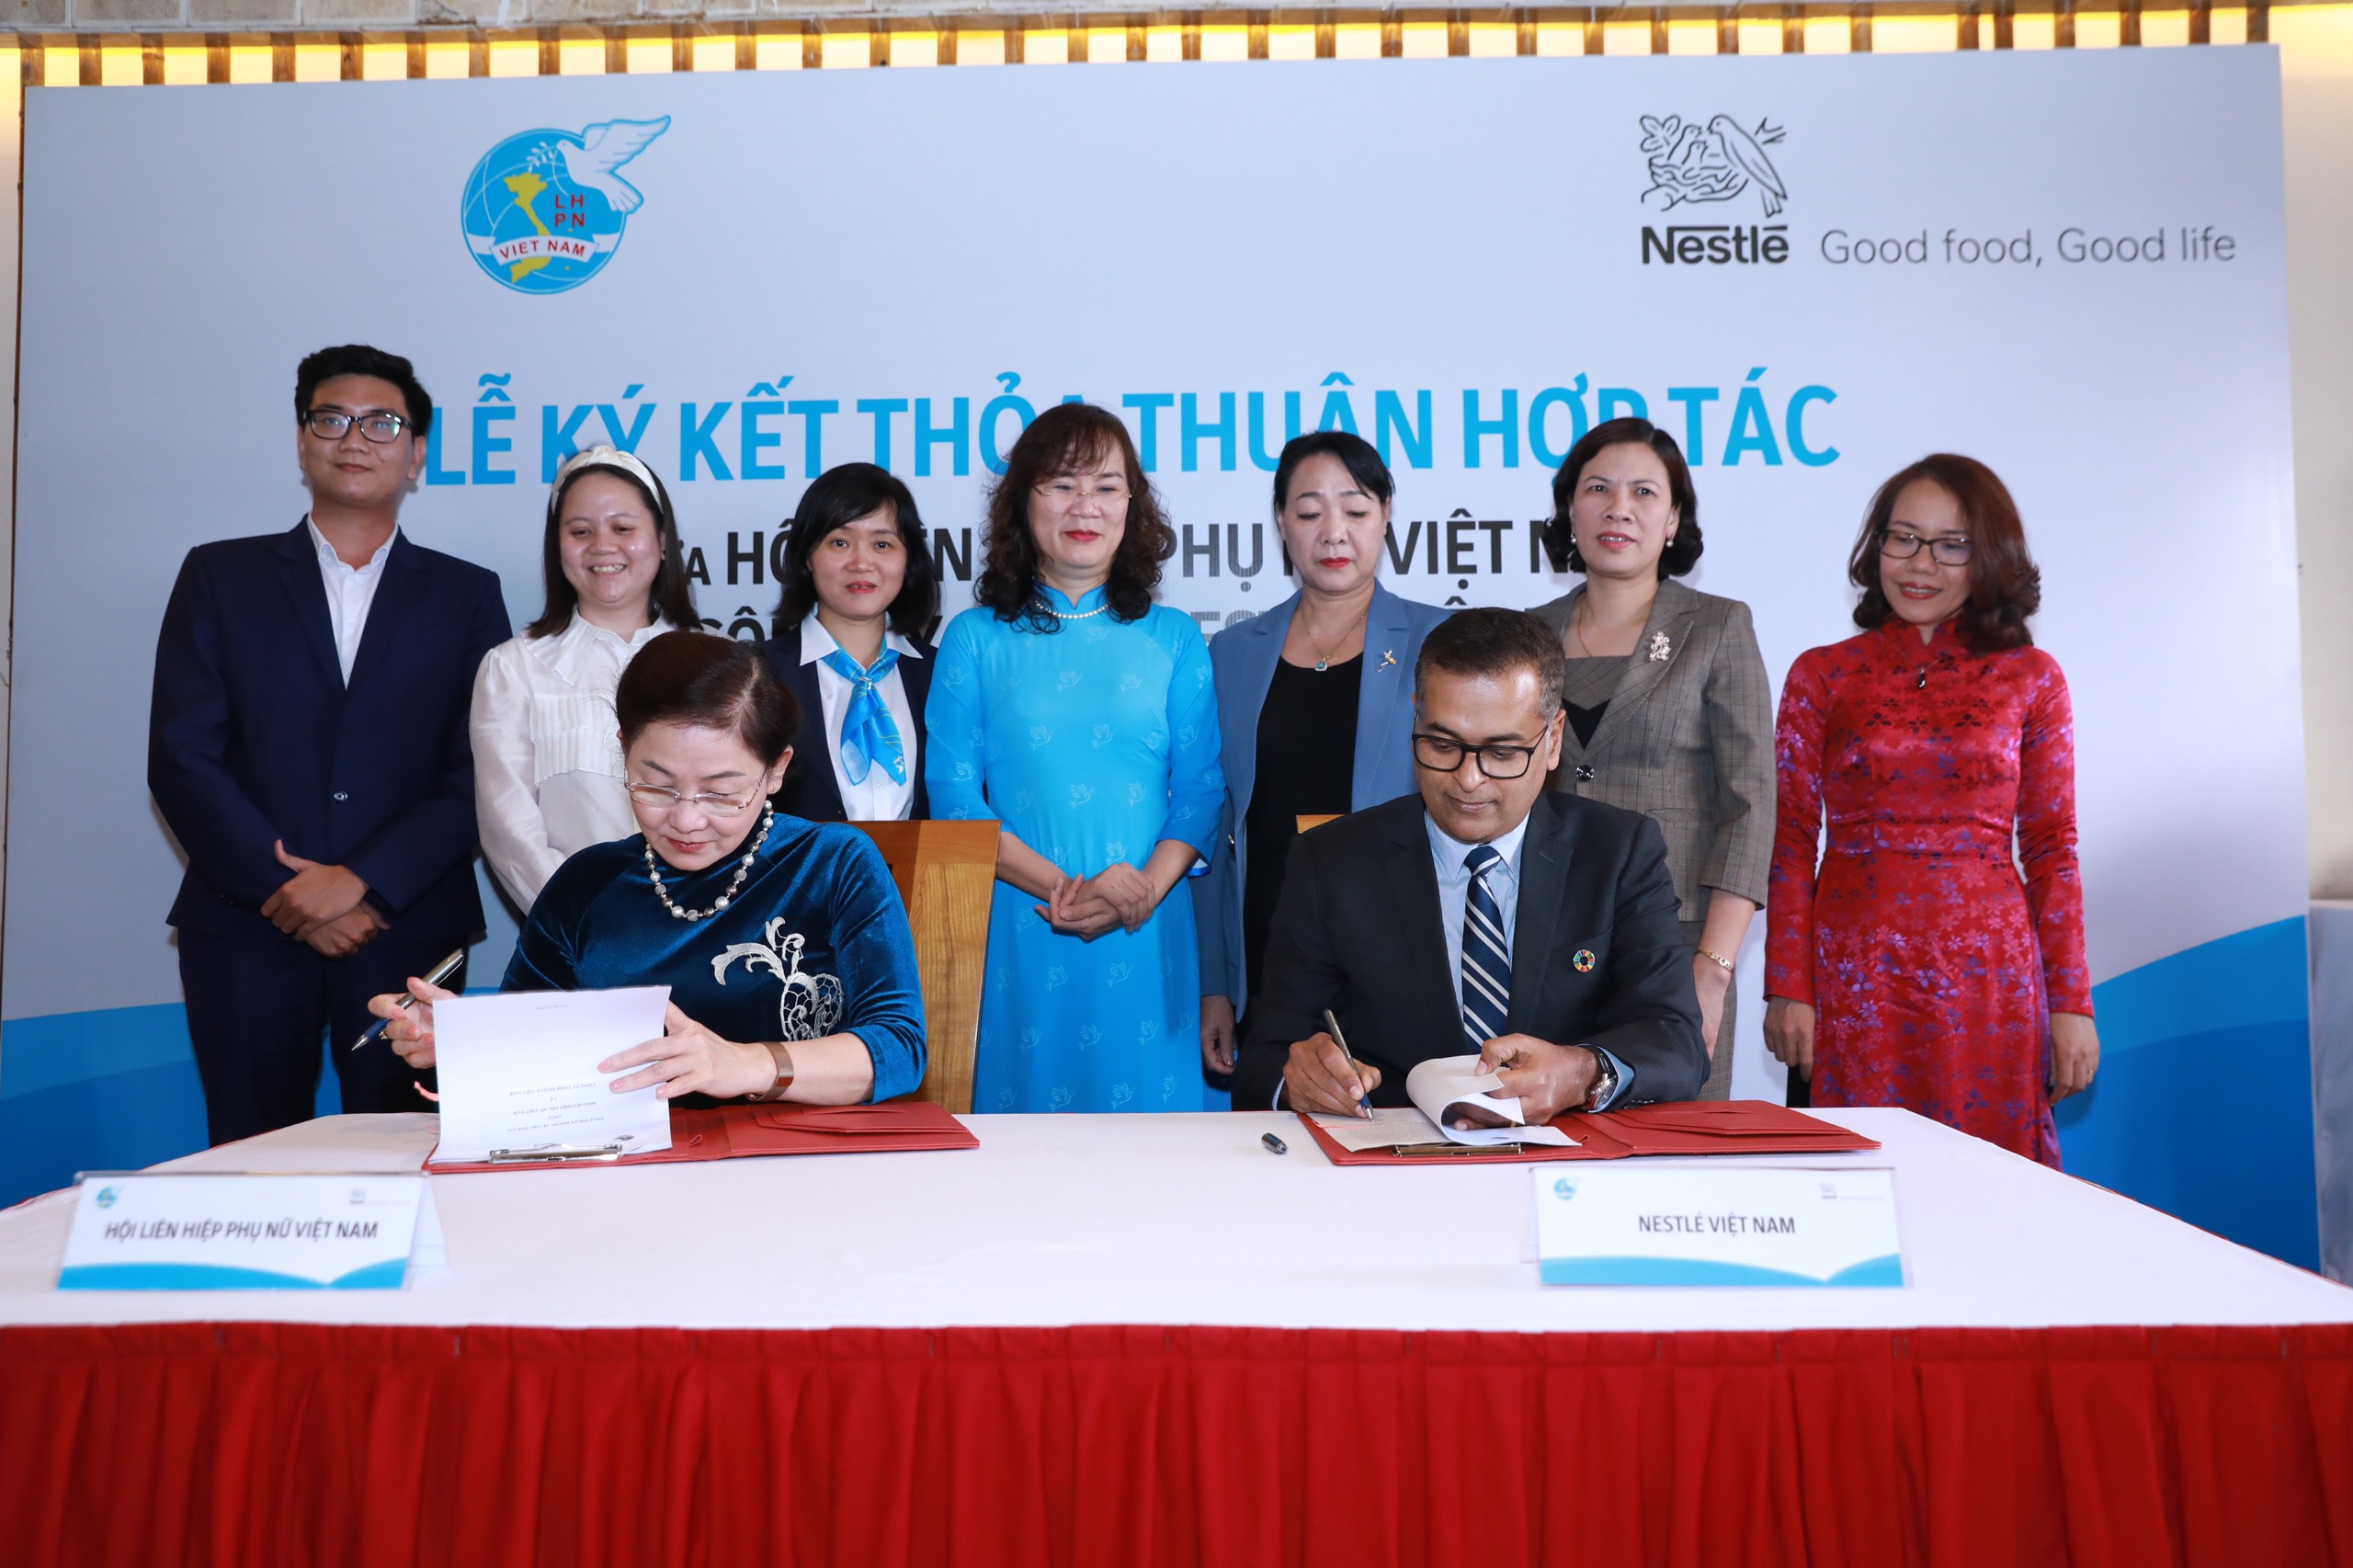 Bà Trần Thị Hương, Phó Chủ tịch Hội LHPNVN ký kết biên bản thỏa thuận hợp tác với ông Binu Jacob, Tổng giám đốc Nestlé Việt Nam